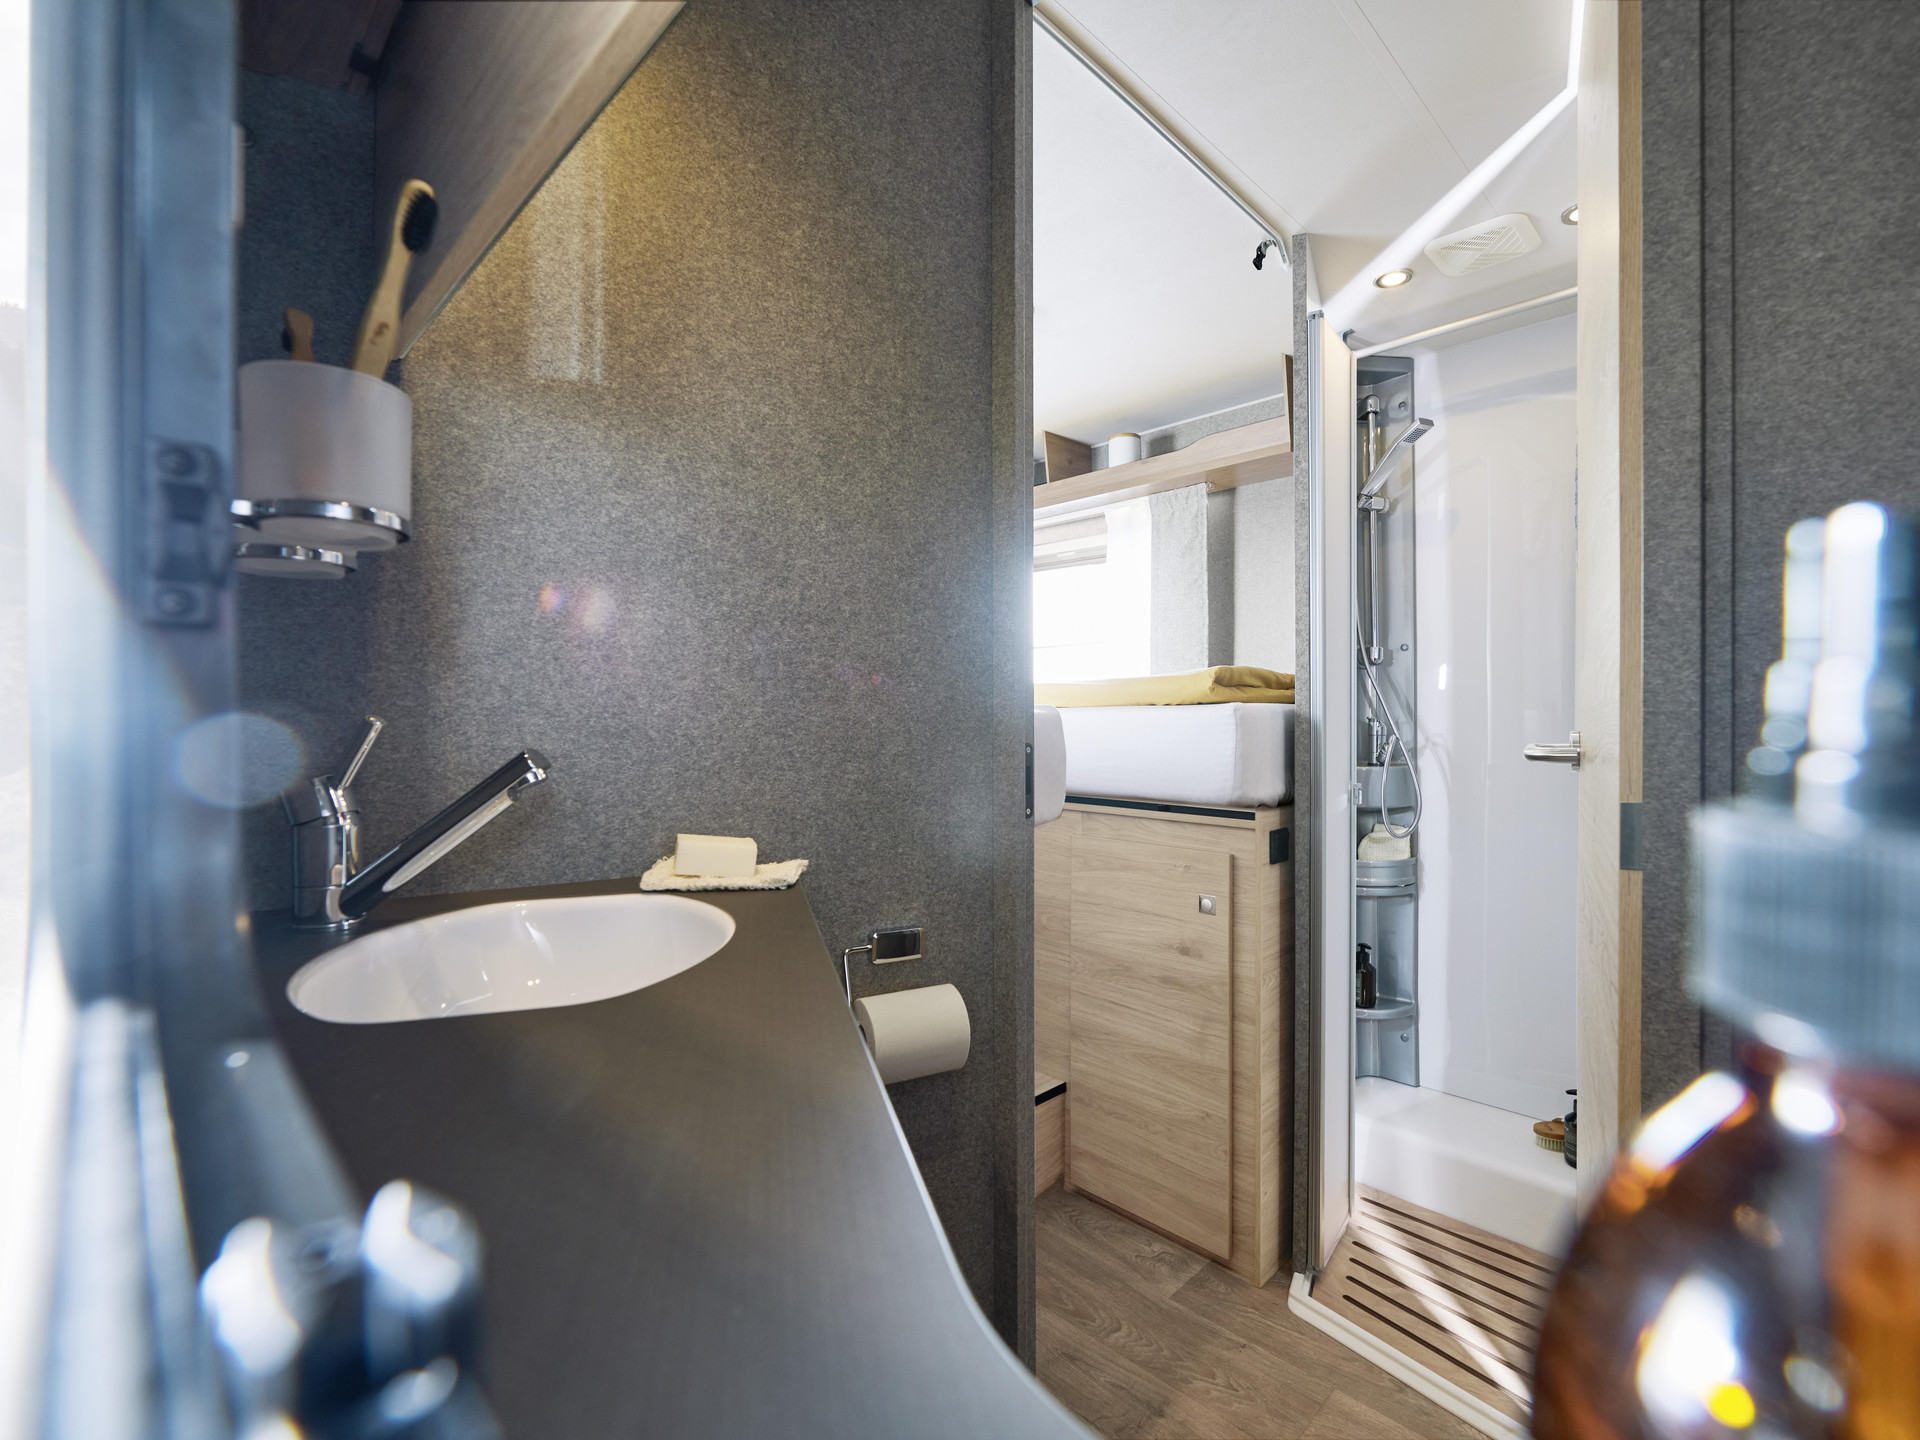 Hoogwaardige materialen en afwerking geven ook de badkamer een zweem van luxe.